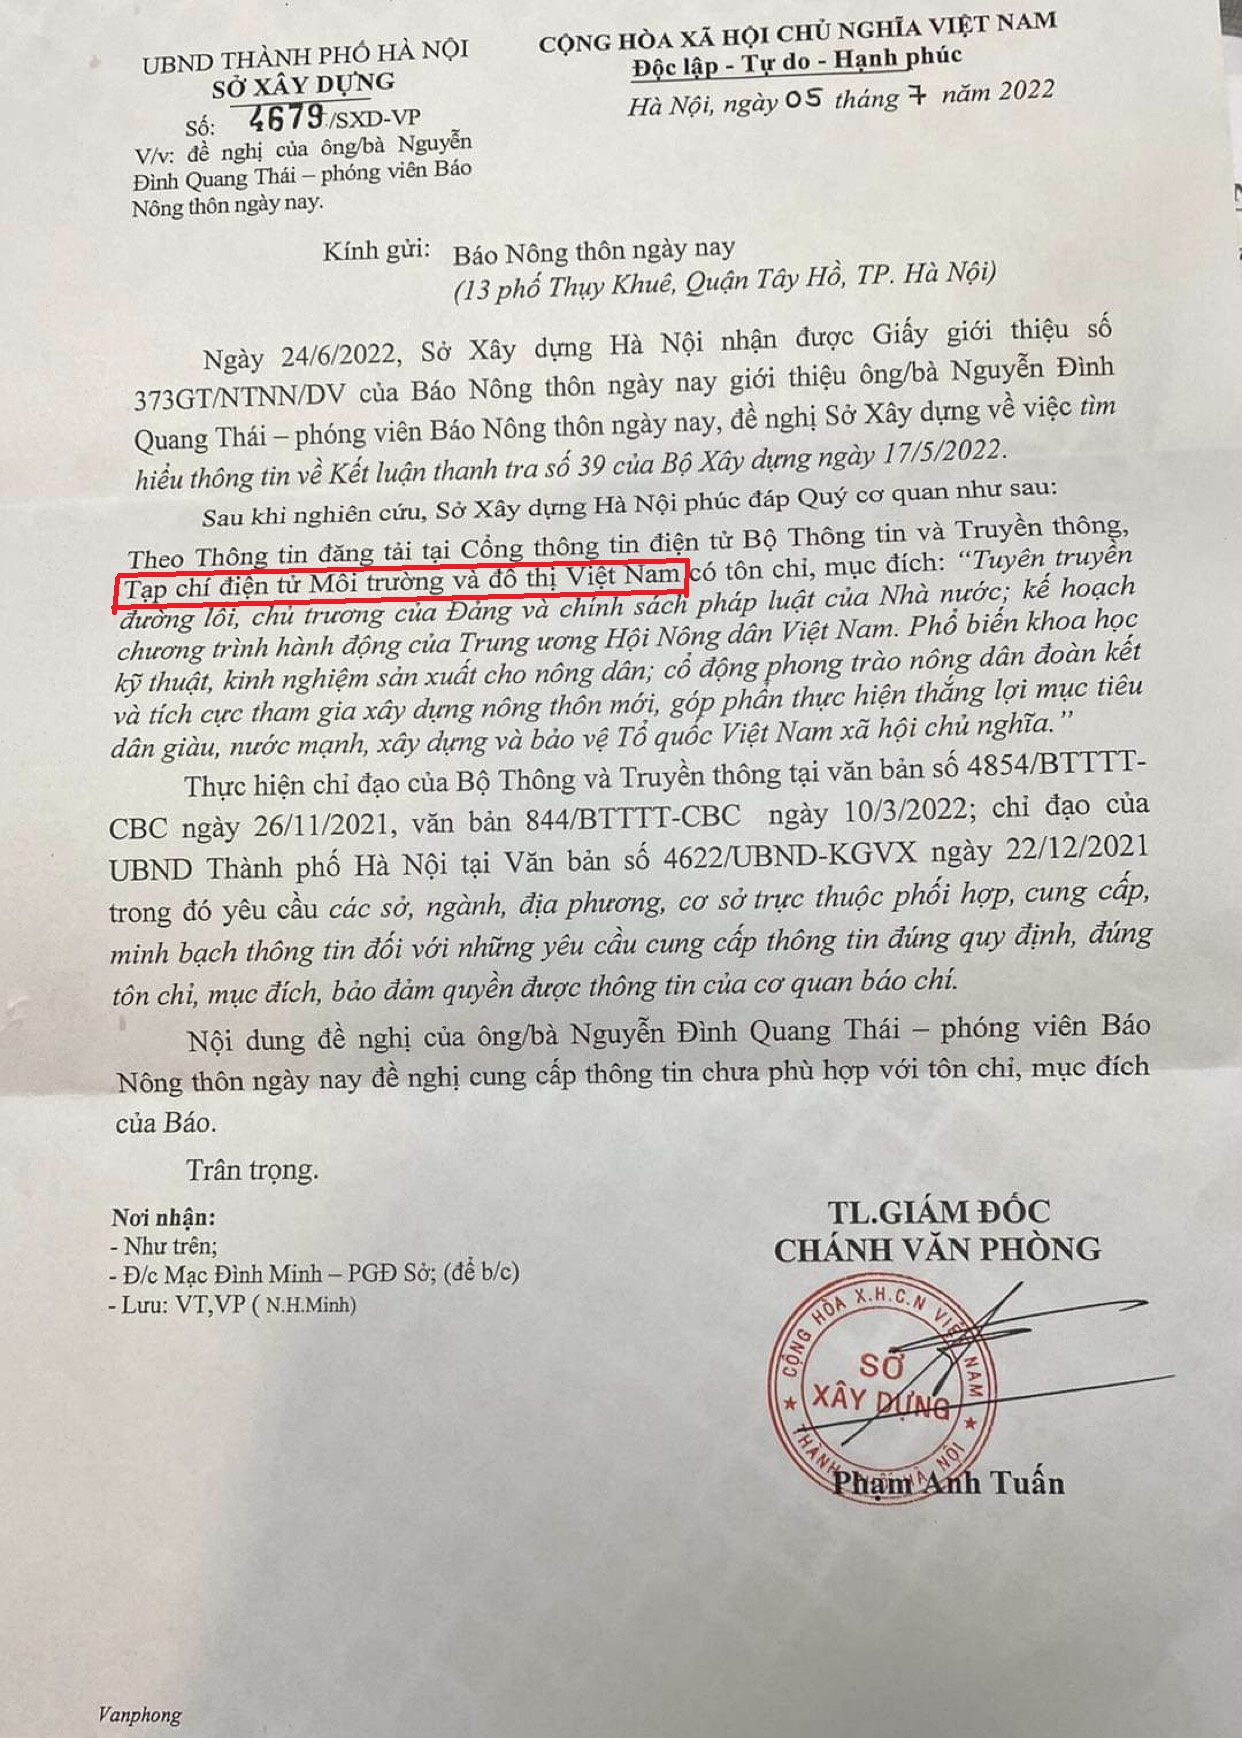 Sở Xây dựng Hà Nội viết sai tên Báo Nông thôn ngày nay trong văn bản